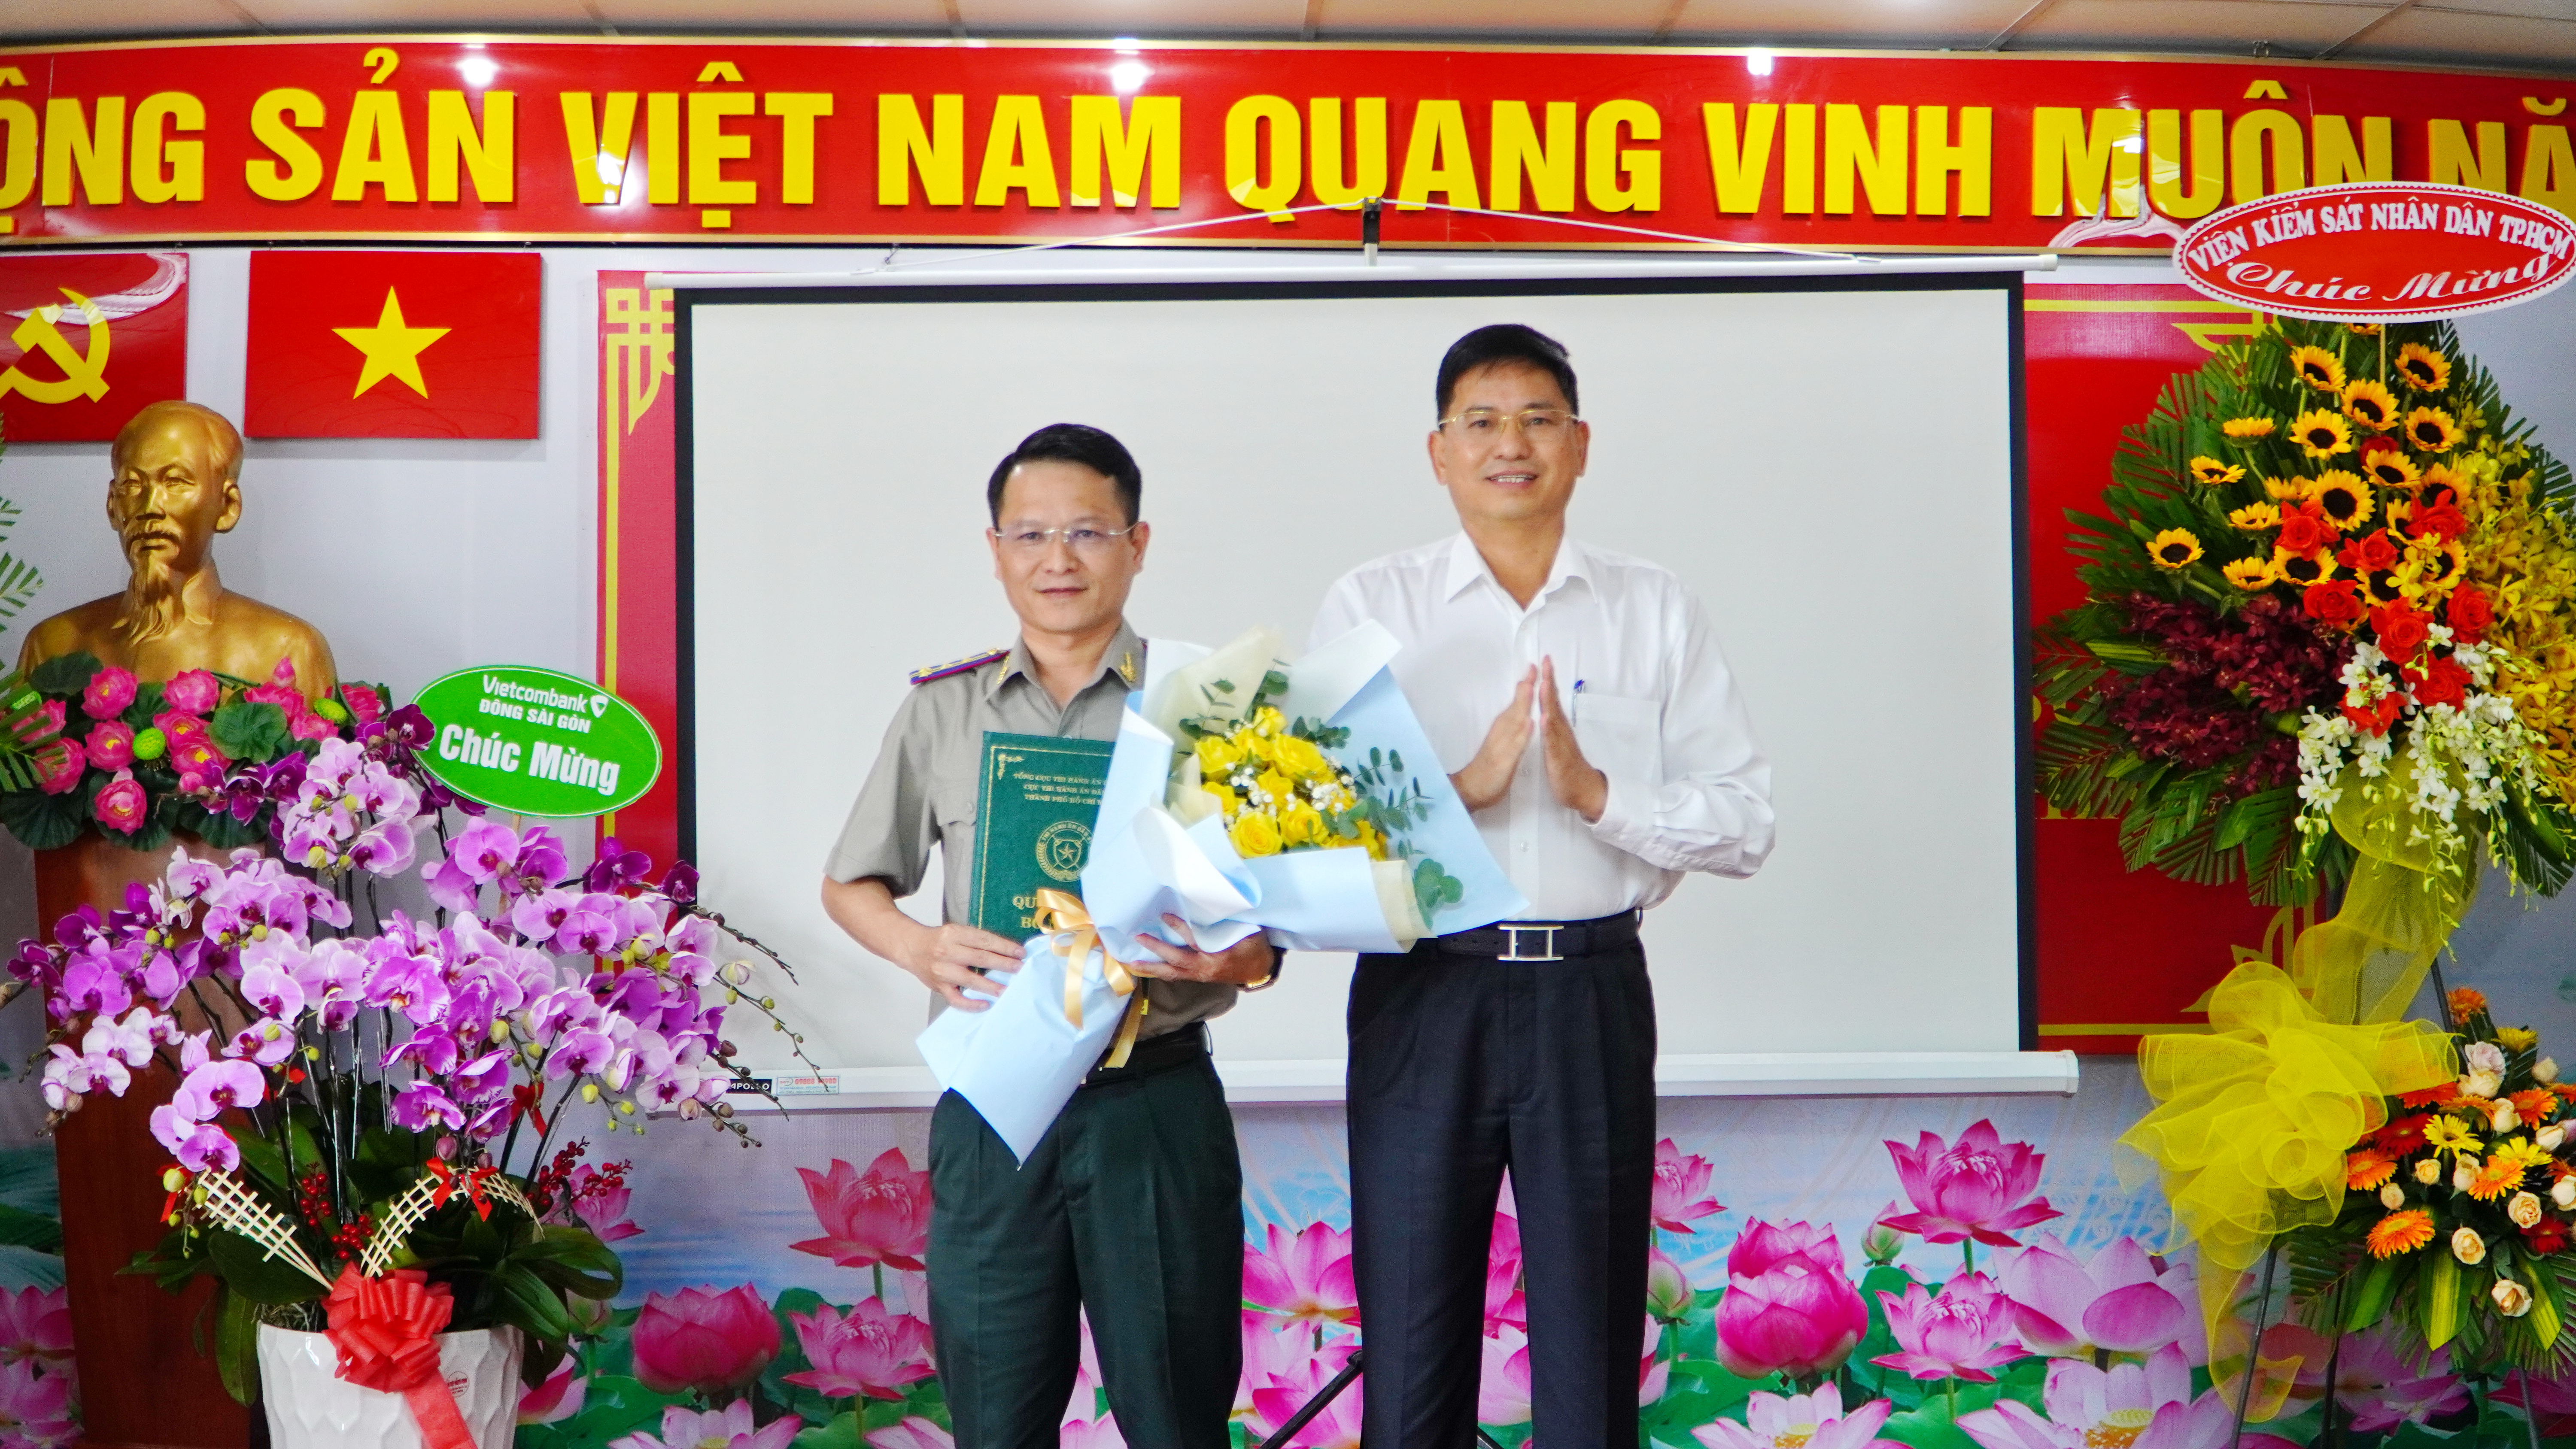 Quyền Cục trưởng Nguyễn Văn Hòa nhận QĐ bổ nhiệm CHV cao cấp